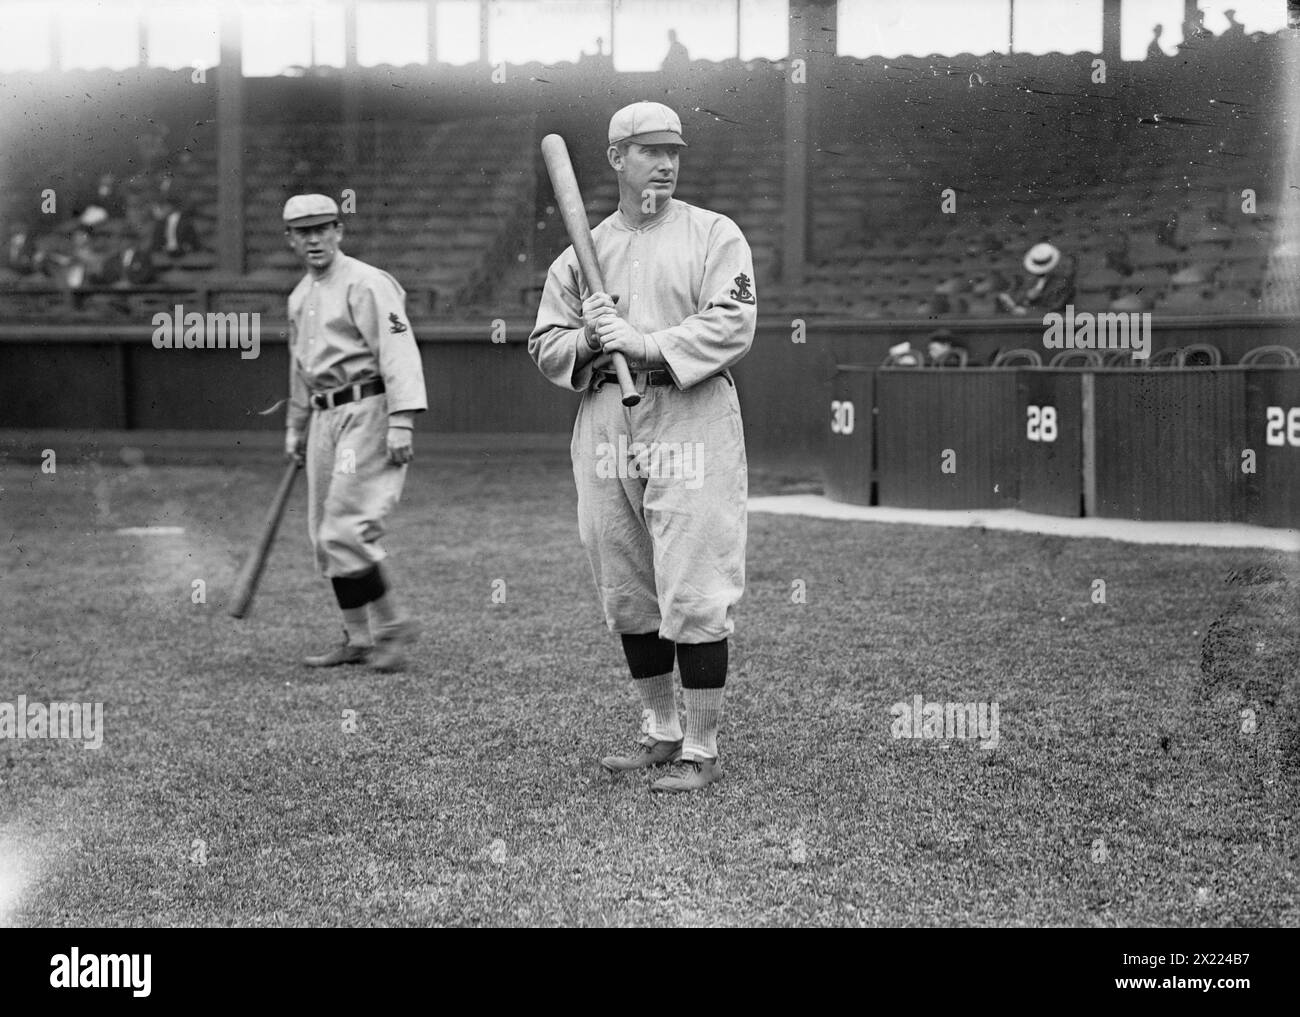 Roger Bresnahan, St Louis, NL, Miller Huggins in background (baseball), c1911. Foto Stock